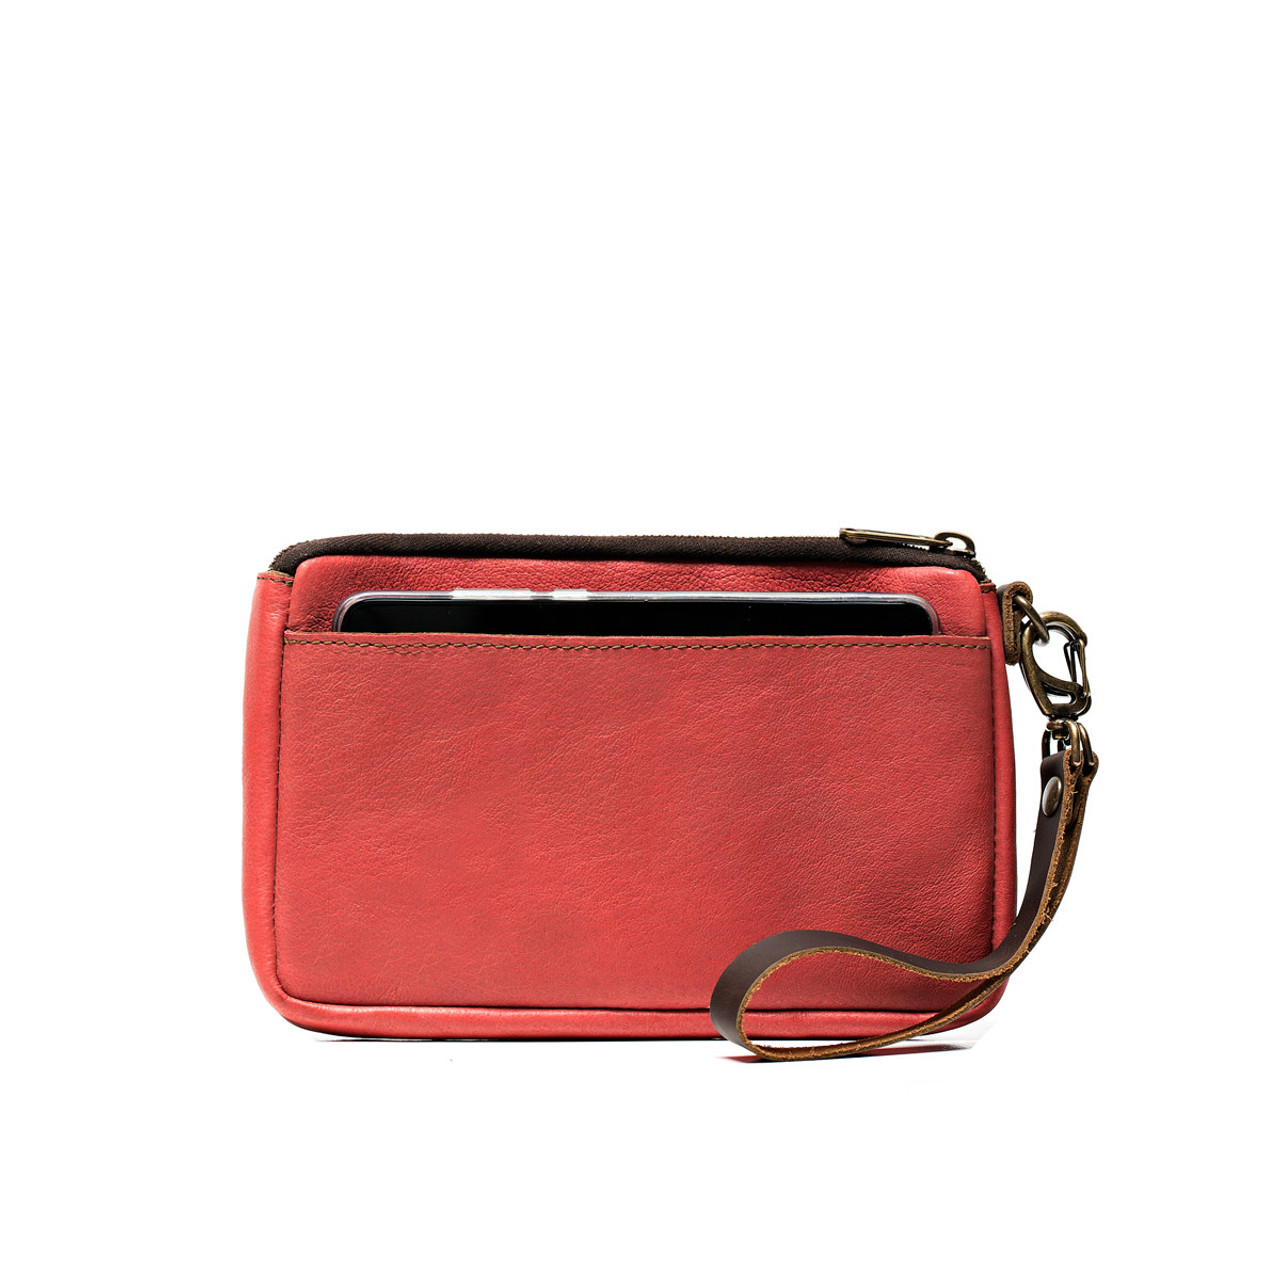 Vintage Alma Beige Woven Top Handle Clutch Purse | Clutch purse, Purses,  Woven top